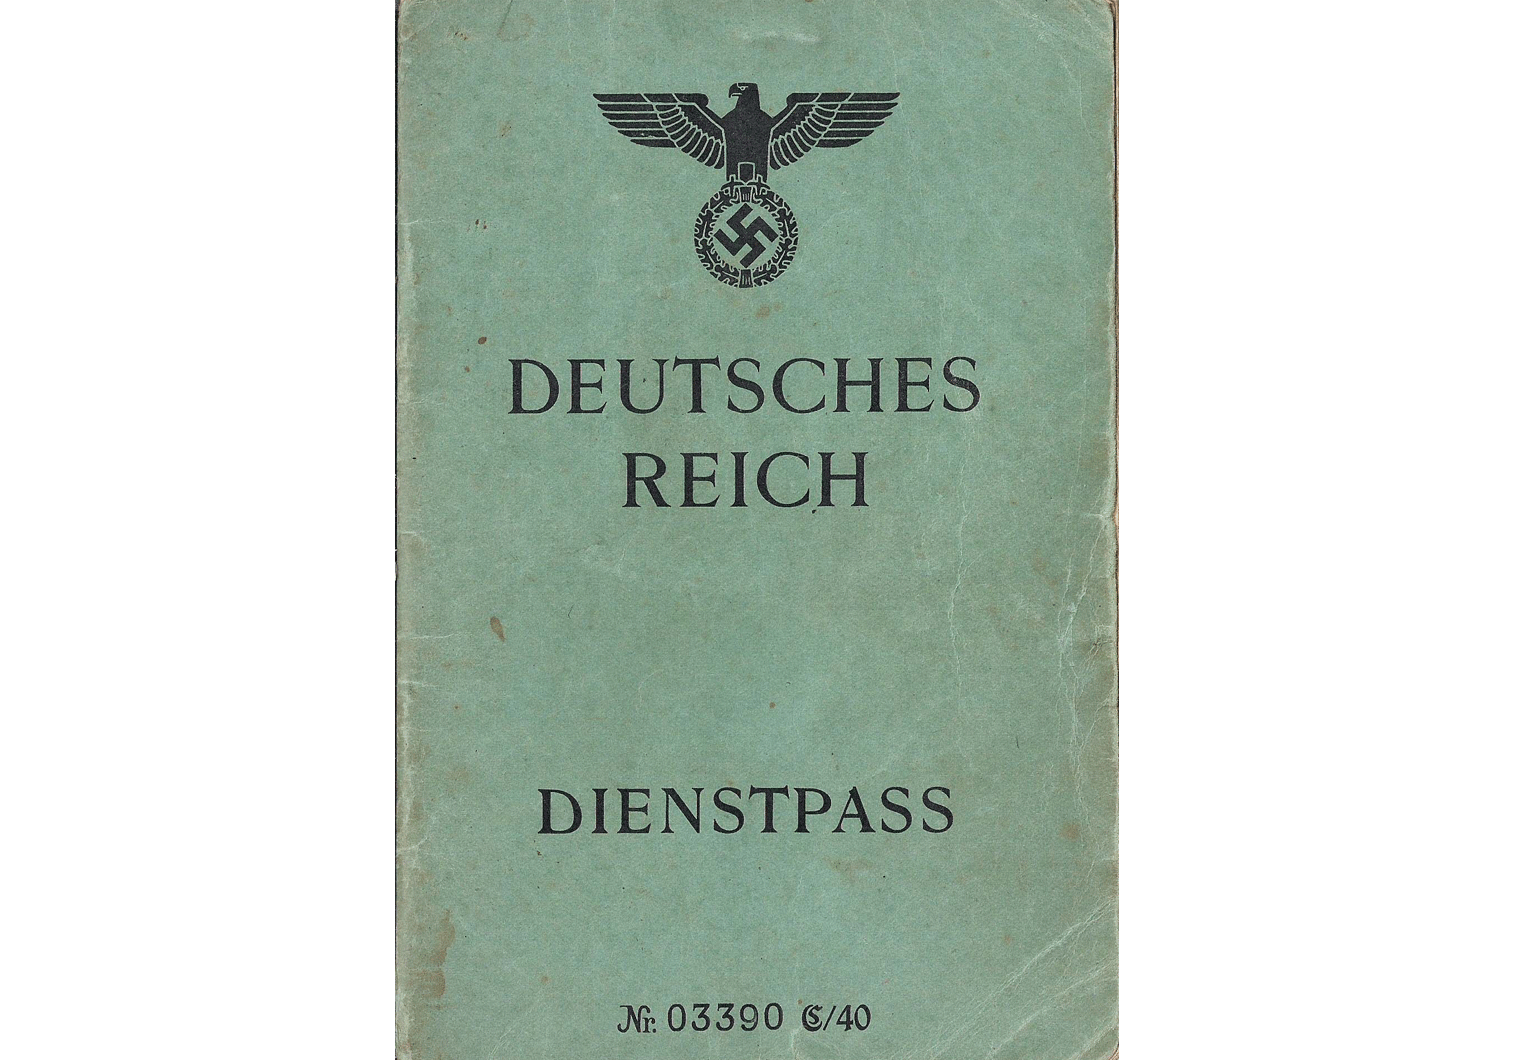 WW2 German Dienstpass passport